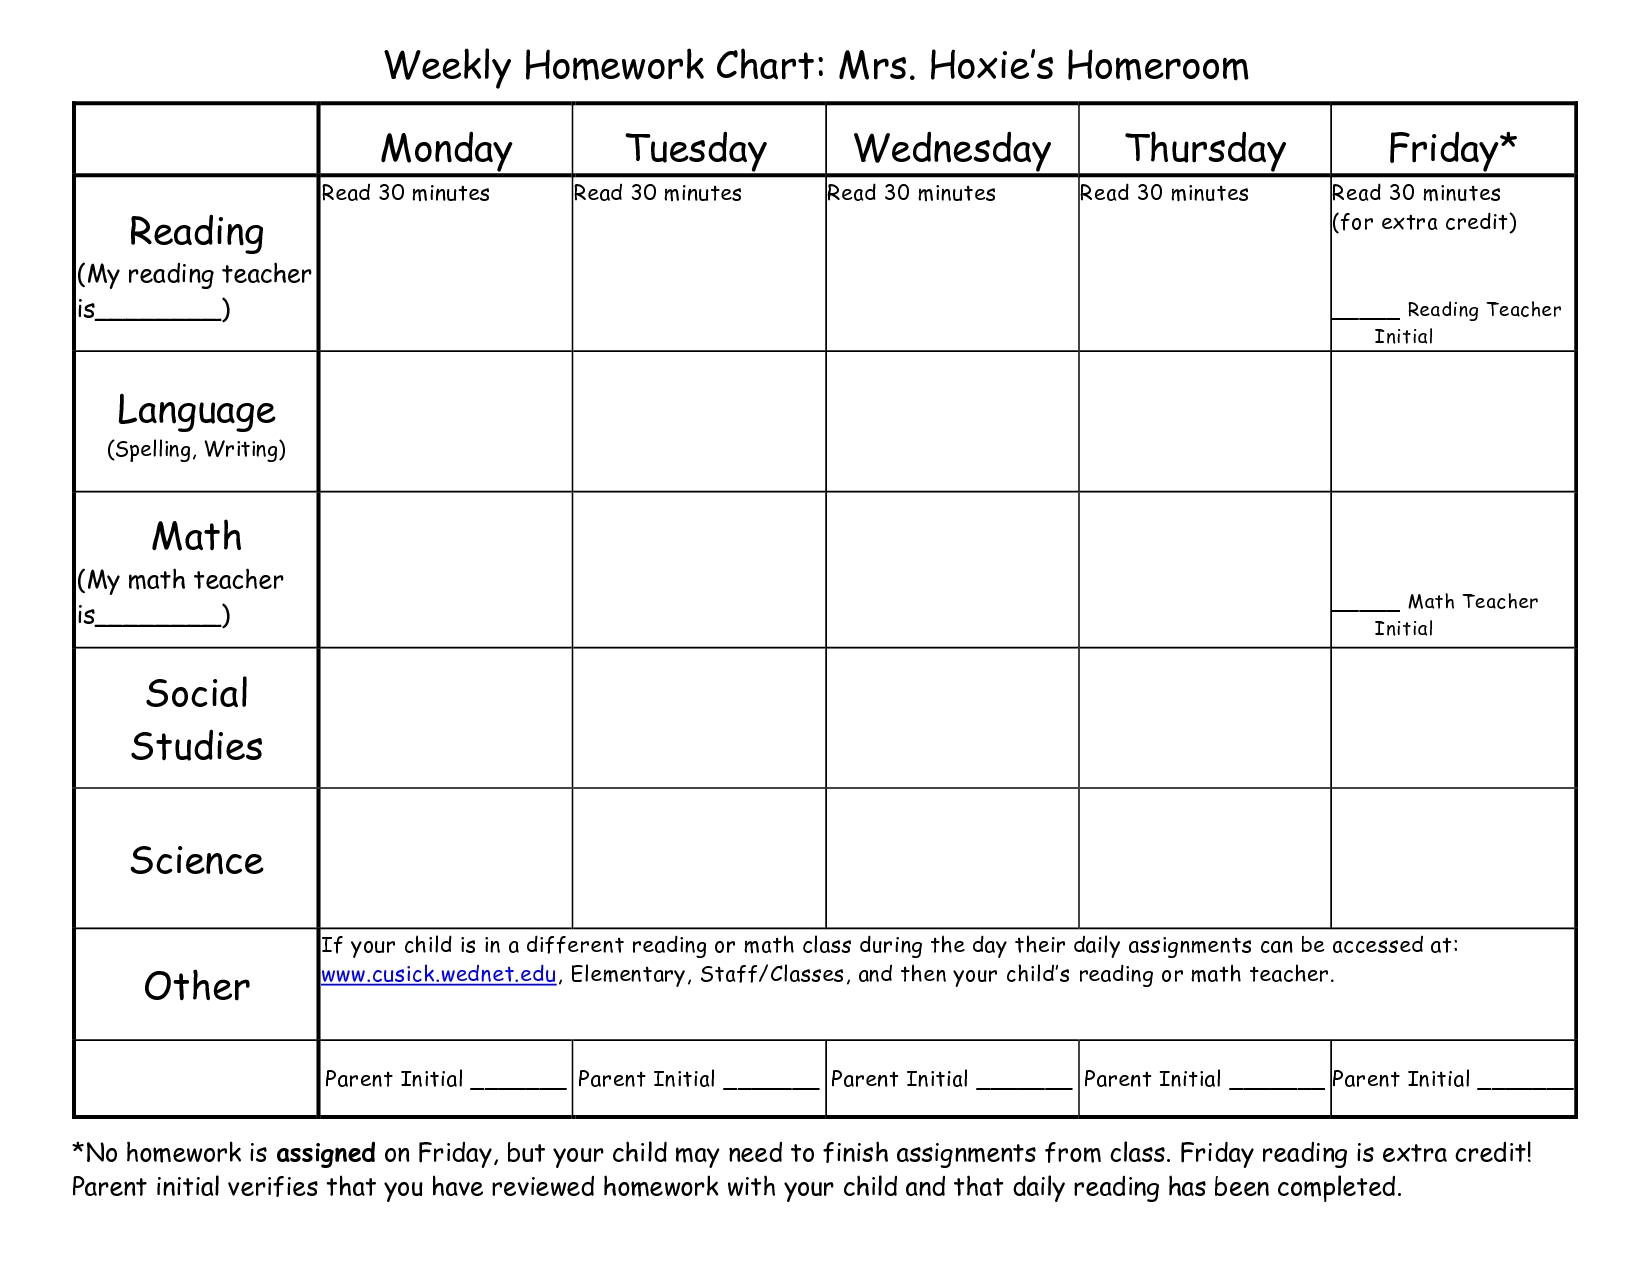 Weekly Homework Assignment Sheet Template - Yeniscale.co  1St Grade Homework Chart Templates